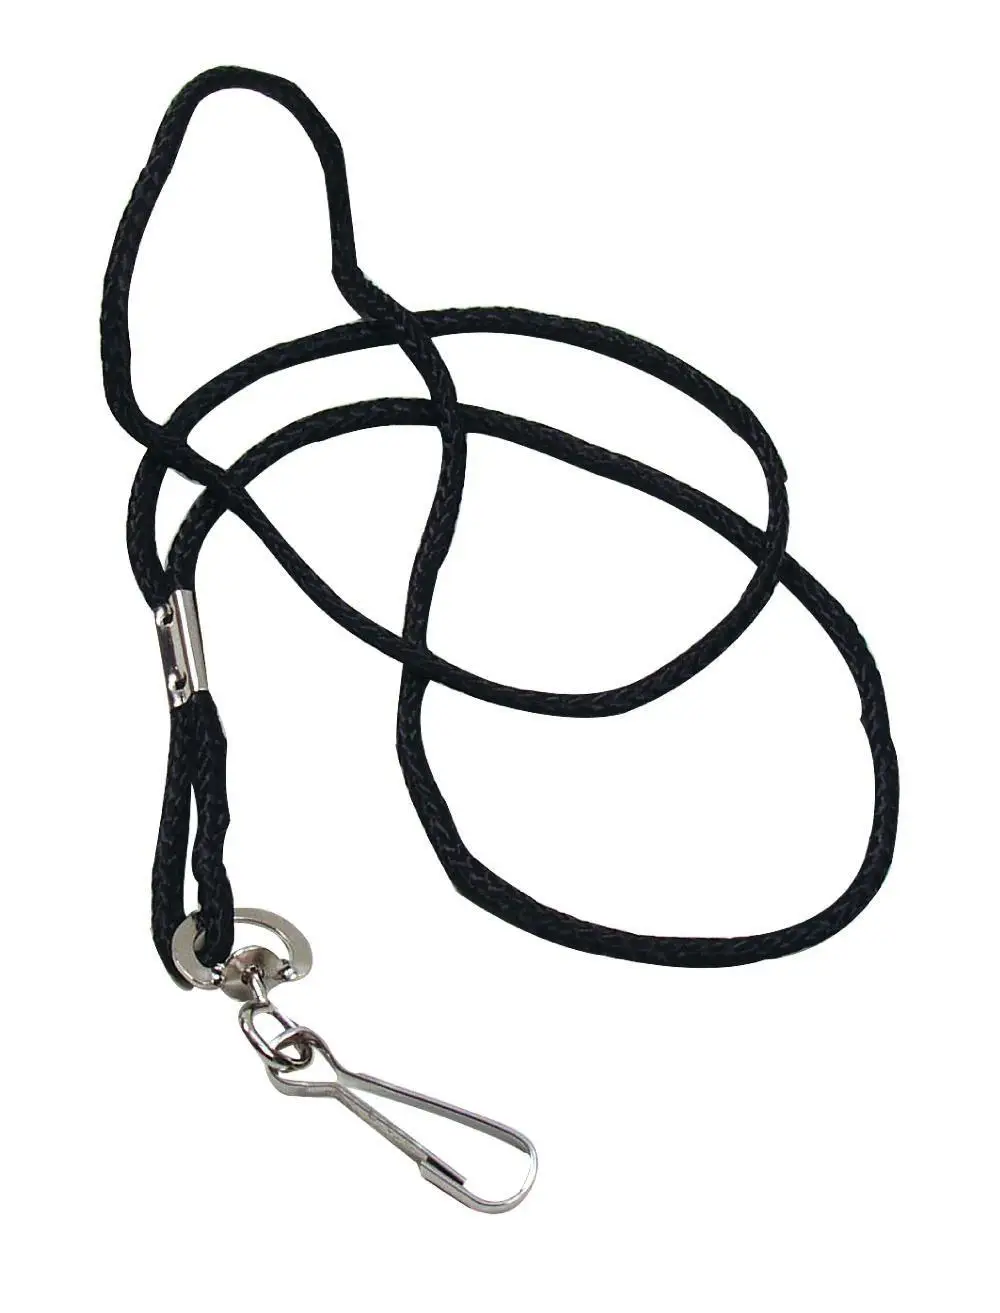 Шнурок для свистка Select Lanyard  чорний, 48 см фото товара